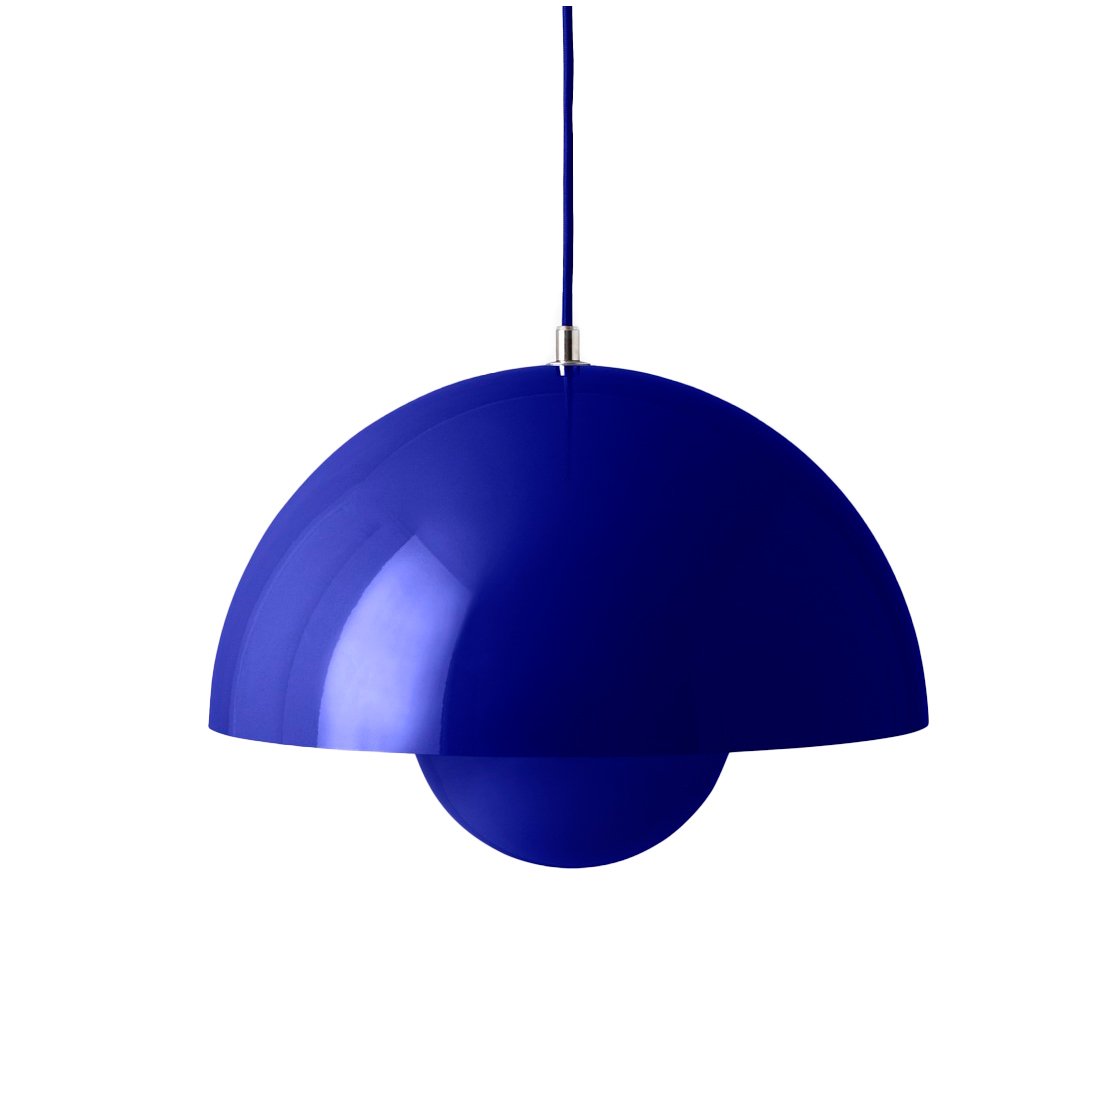 &Tradition Flowerpot hanglamp VP7 Cobalt blue